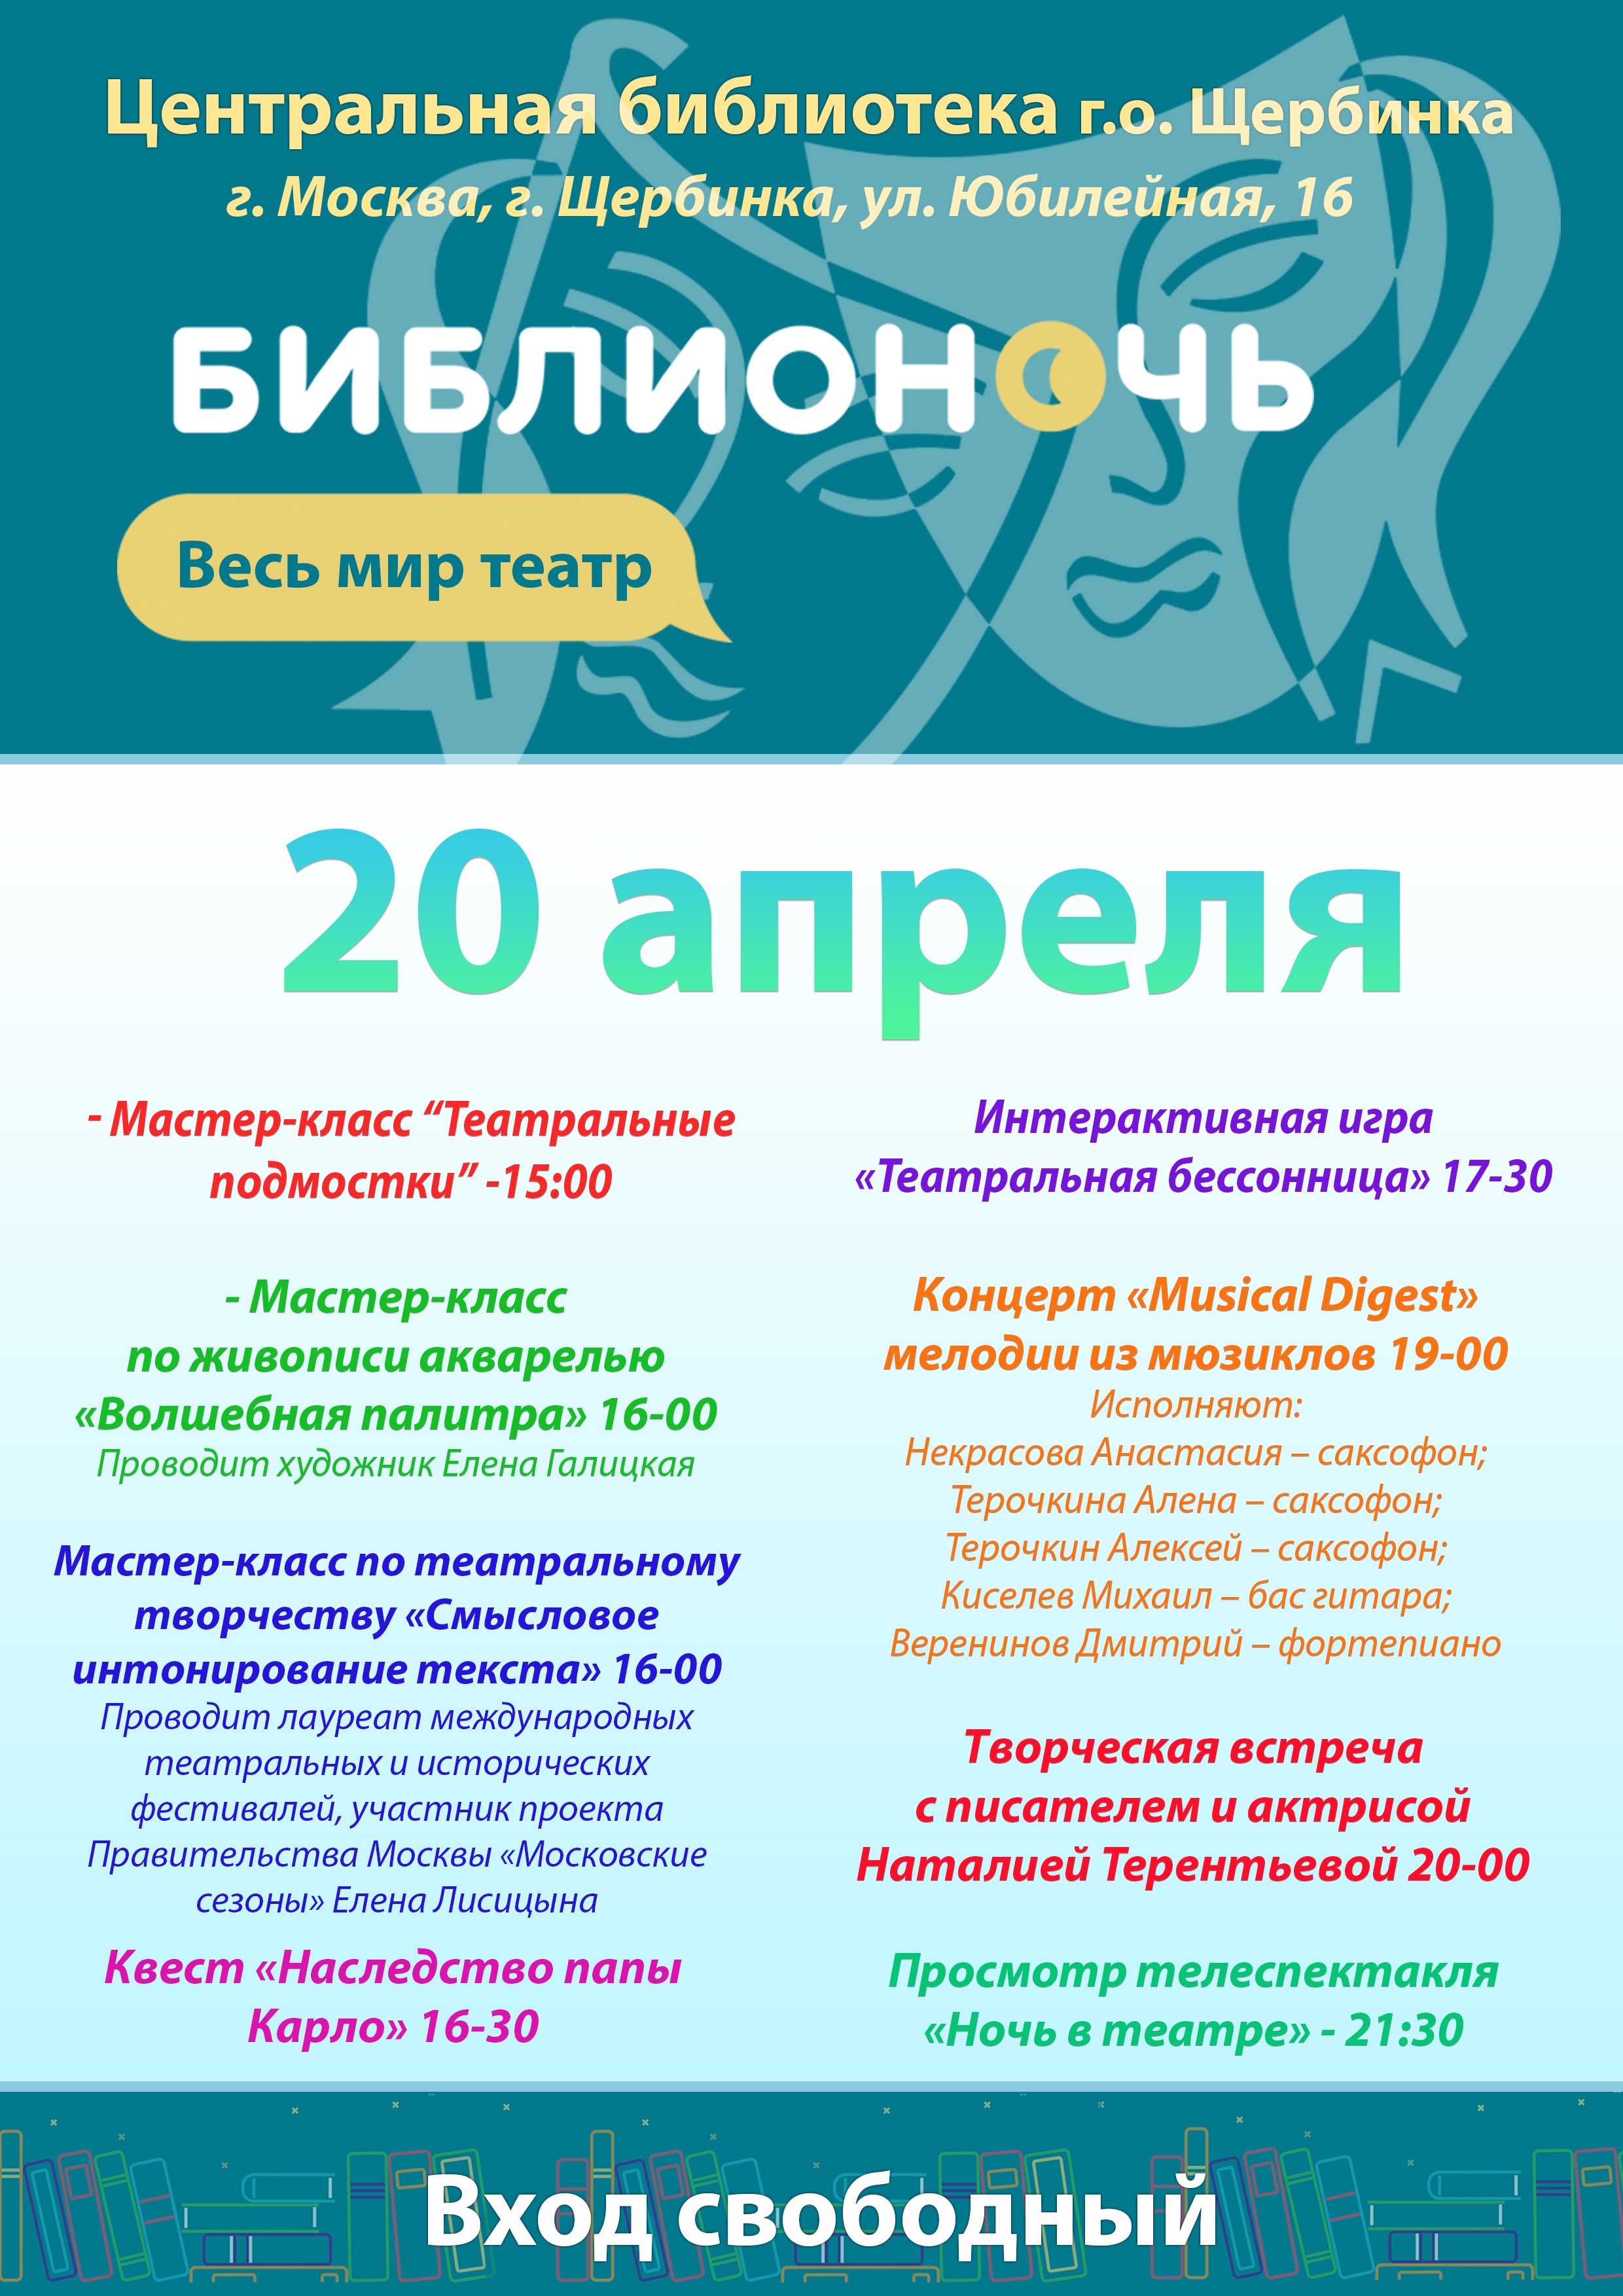 Центральная библиотека Щербинки приглашает всех желающих принять участие в акции «Библионочь-2019» 